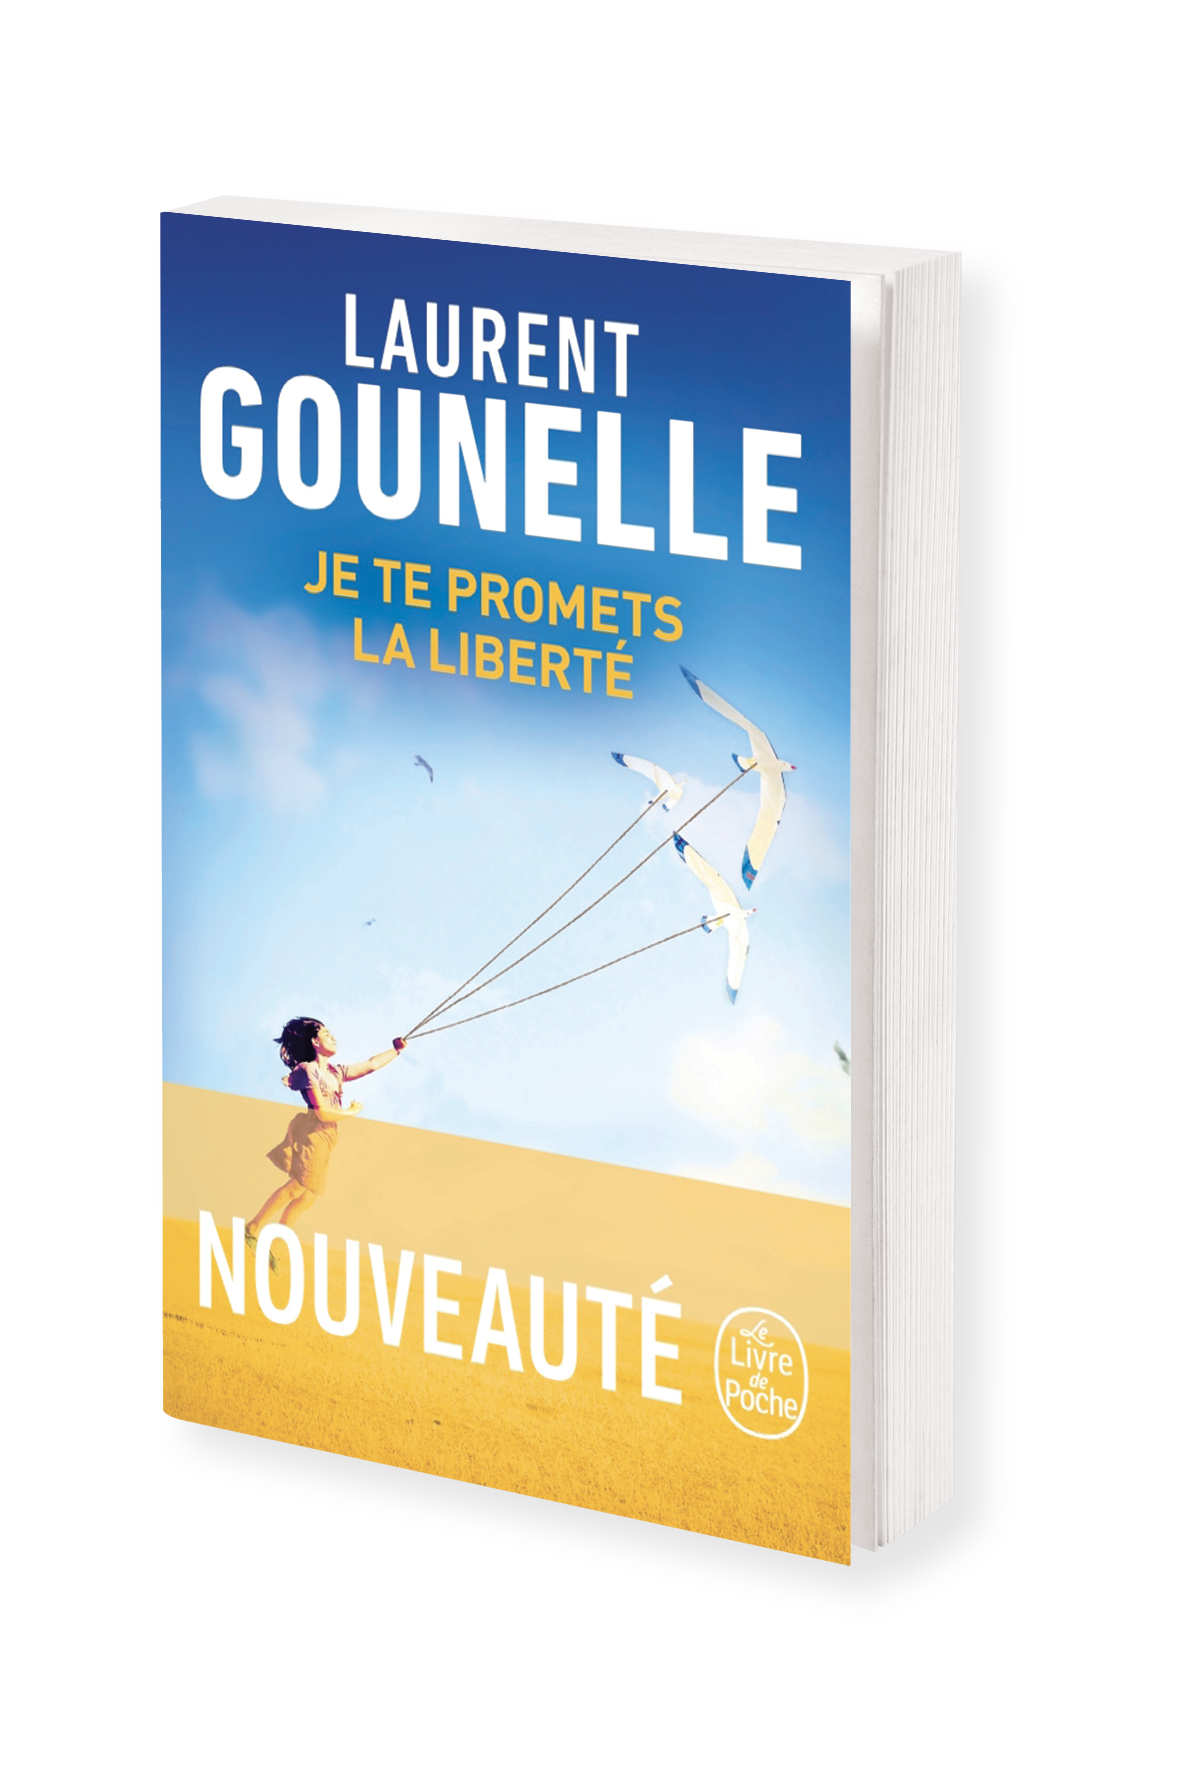 Laurent Gounelle : découvrez la couverture de son prochain roman